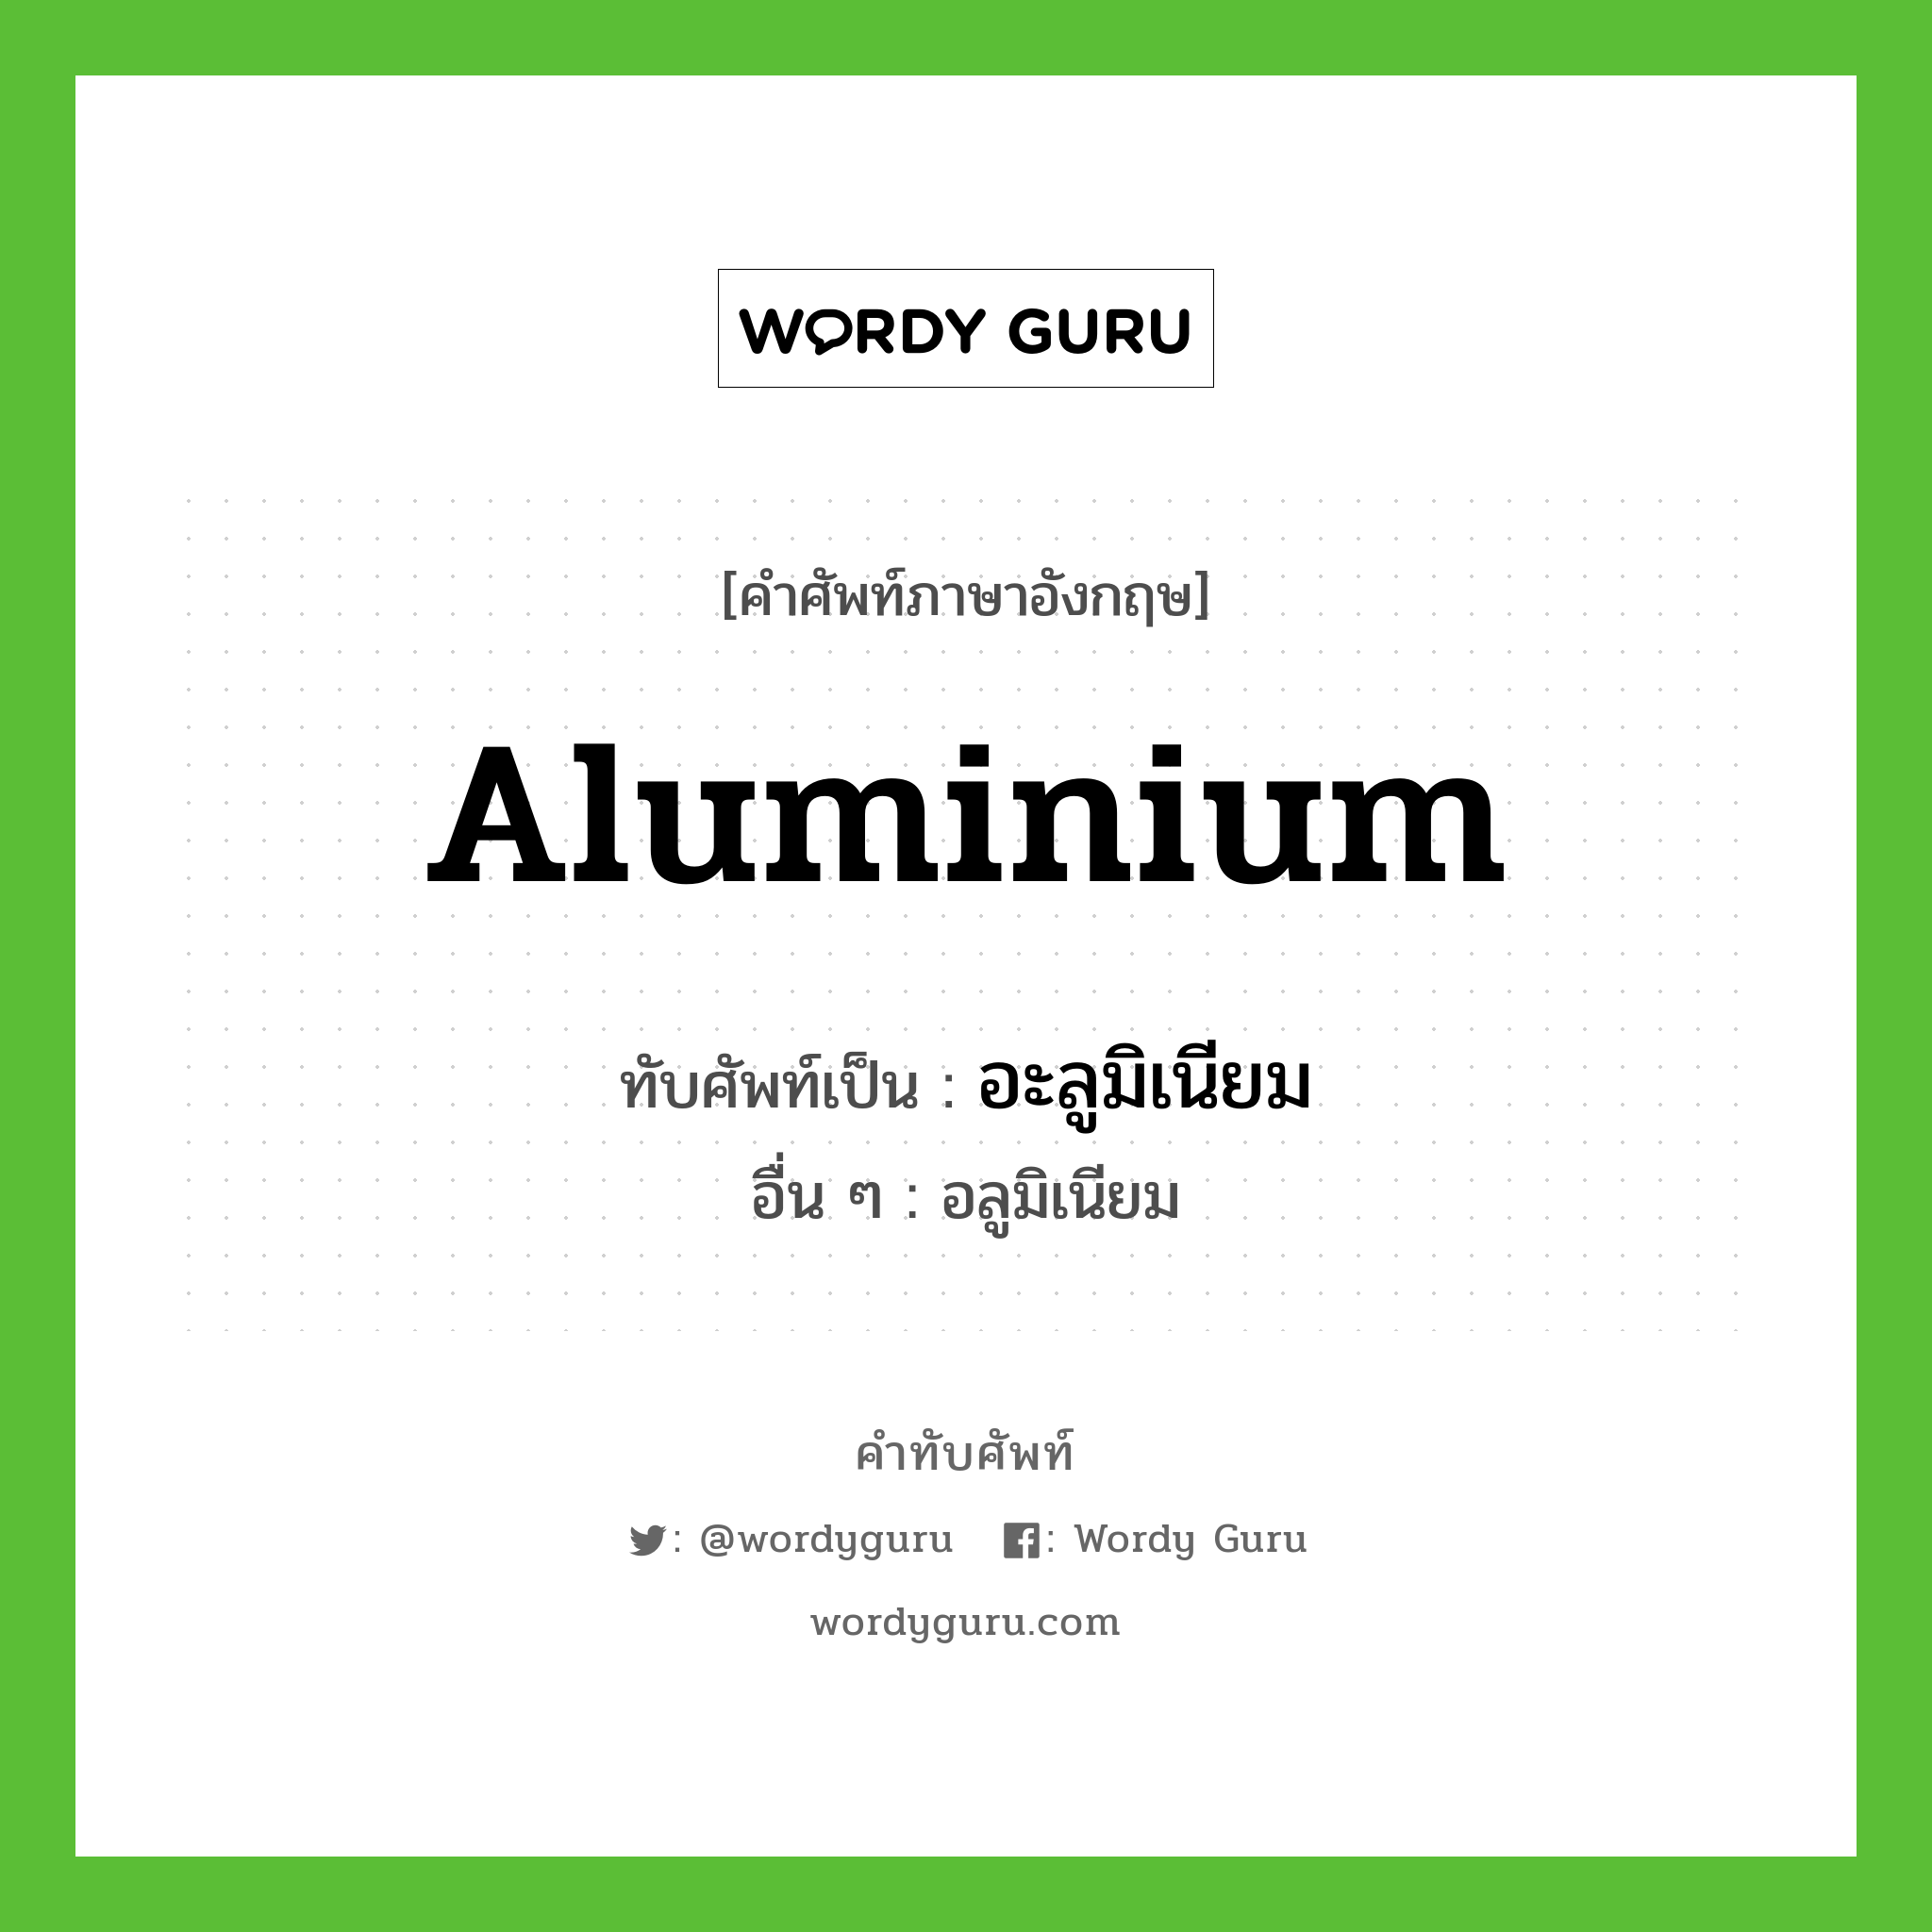 aluminium เขียนเป็นคำไทยว่าอะไร?, คำศัพท์ภาษาอังกฤษ aluminium ทับศัพท์เป็น อะลูมิเนียม อื่น ๆ อลูมิเนียม